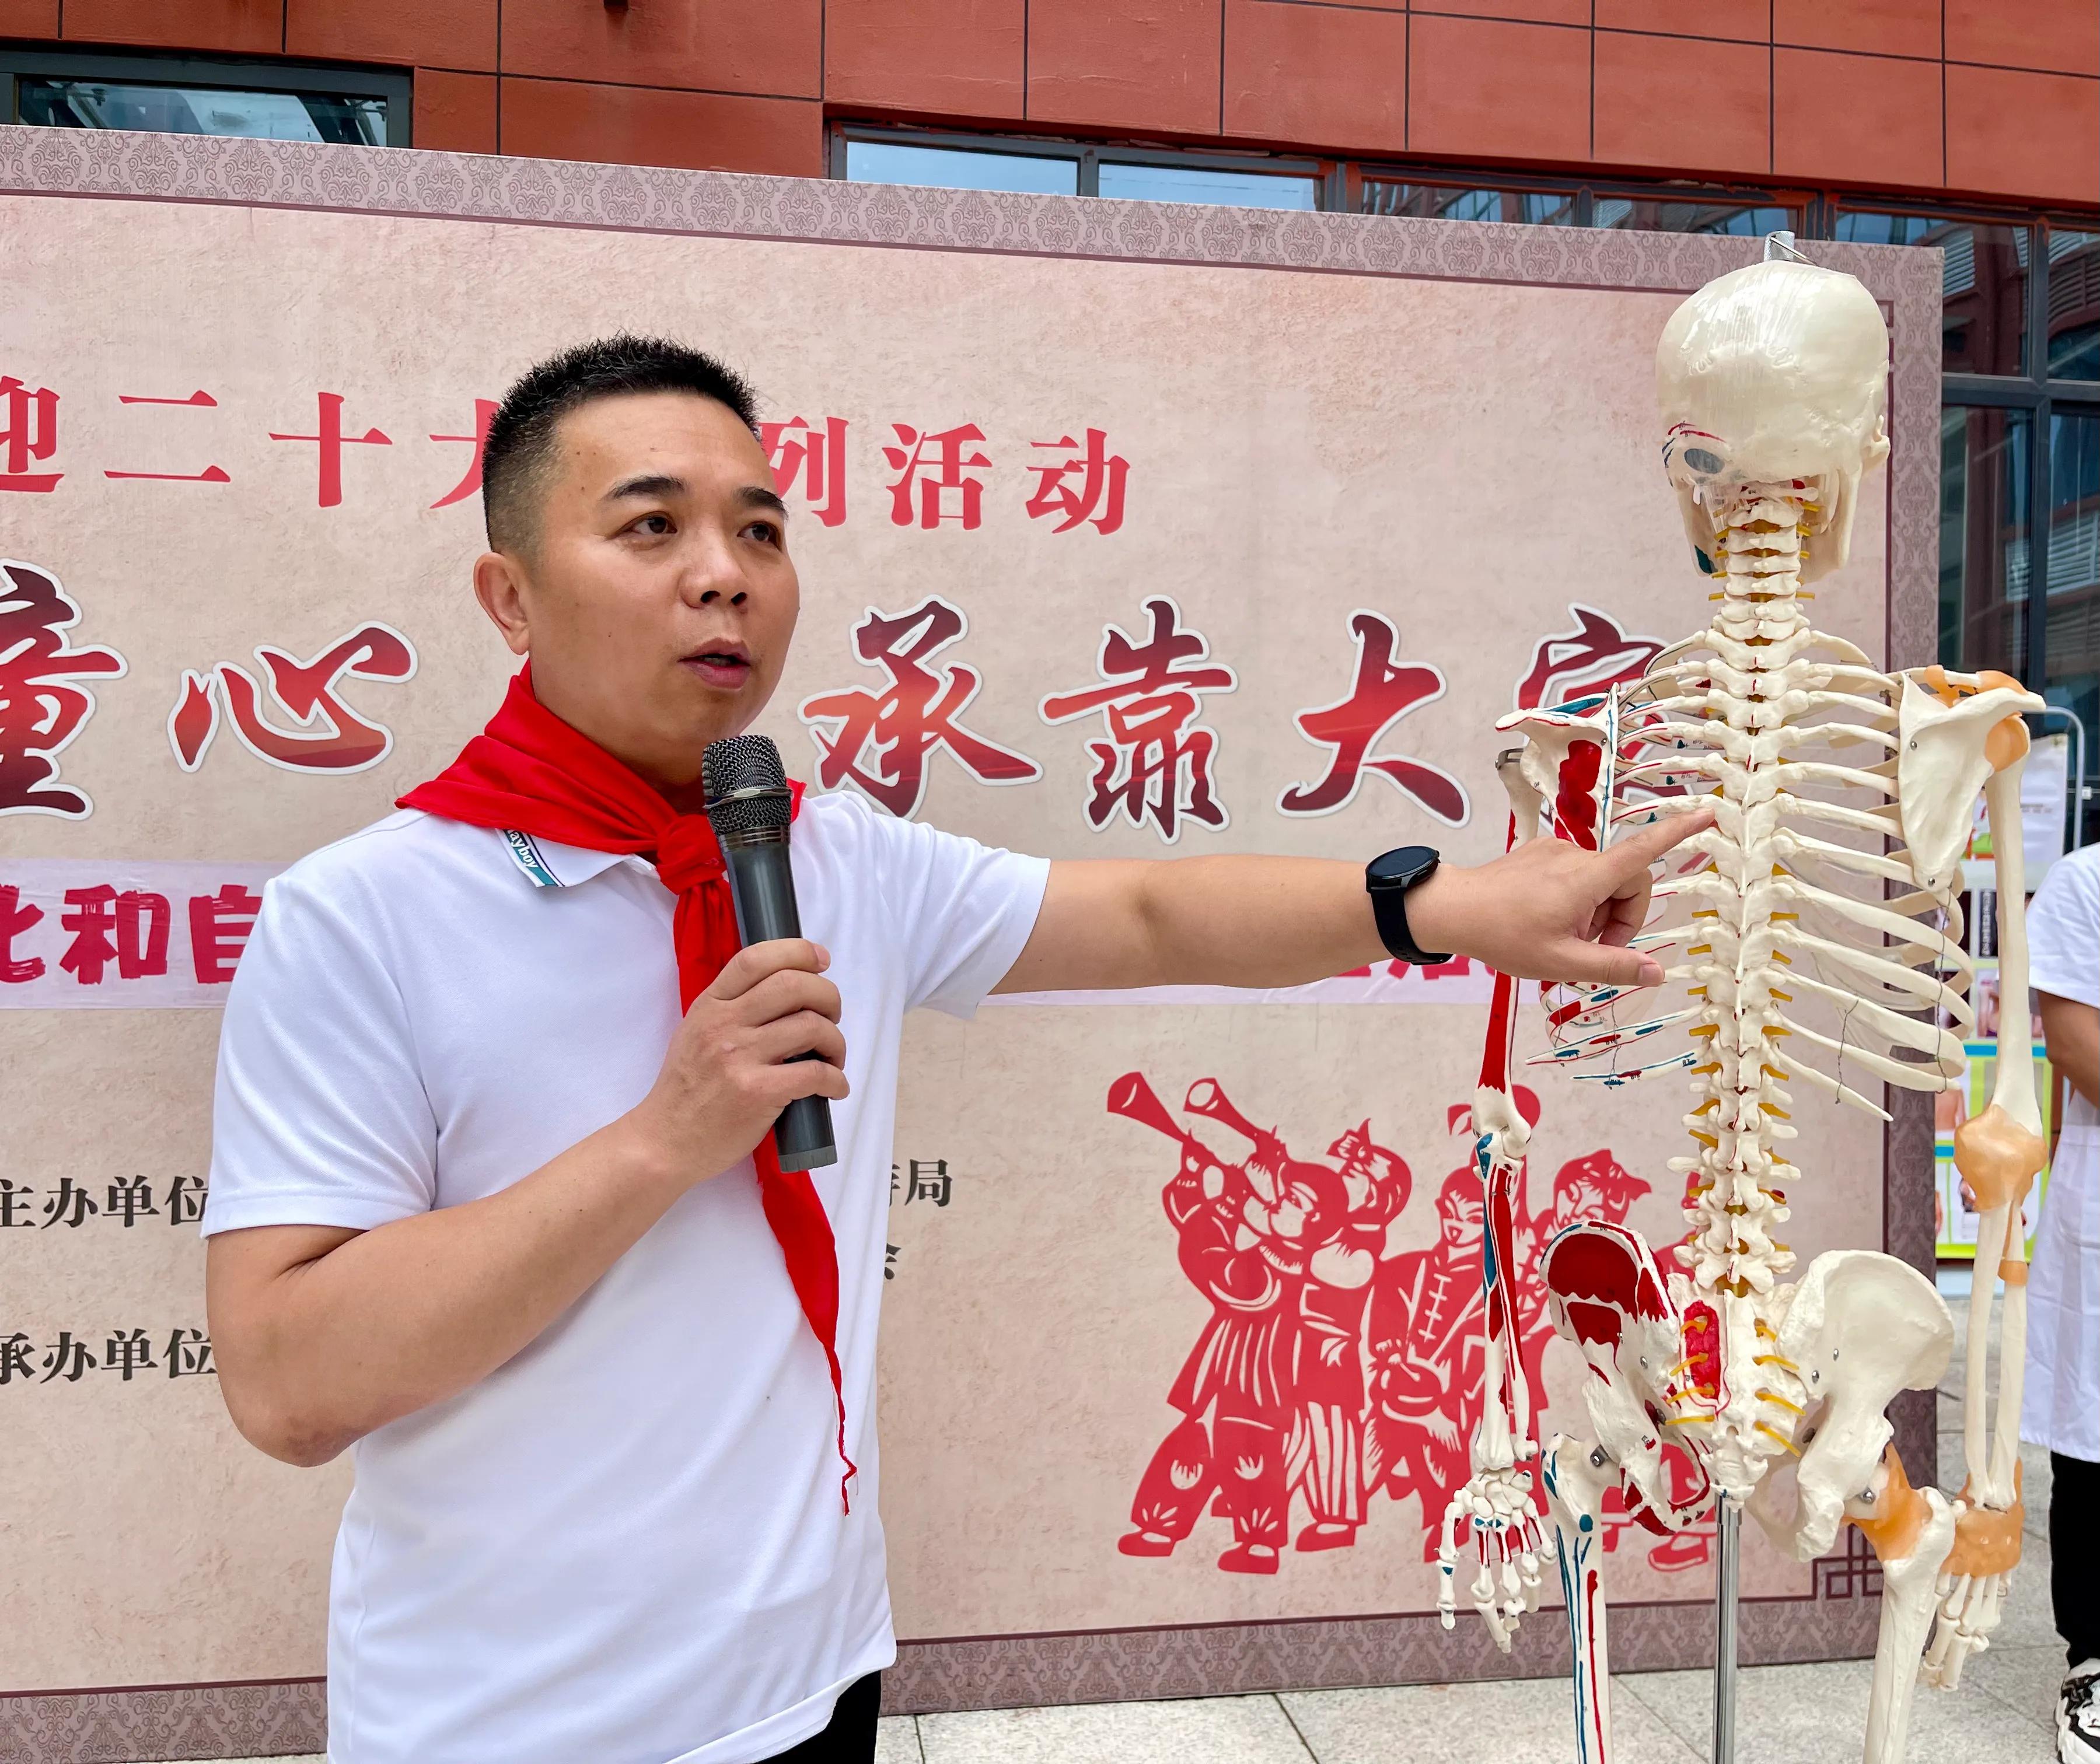 《中医骨诊疗法》市级代表性传承人赵哲勋带领医护团队走进渭南第一小学普及青少年脊柱健康知识